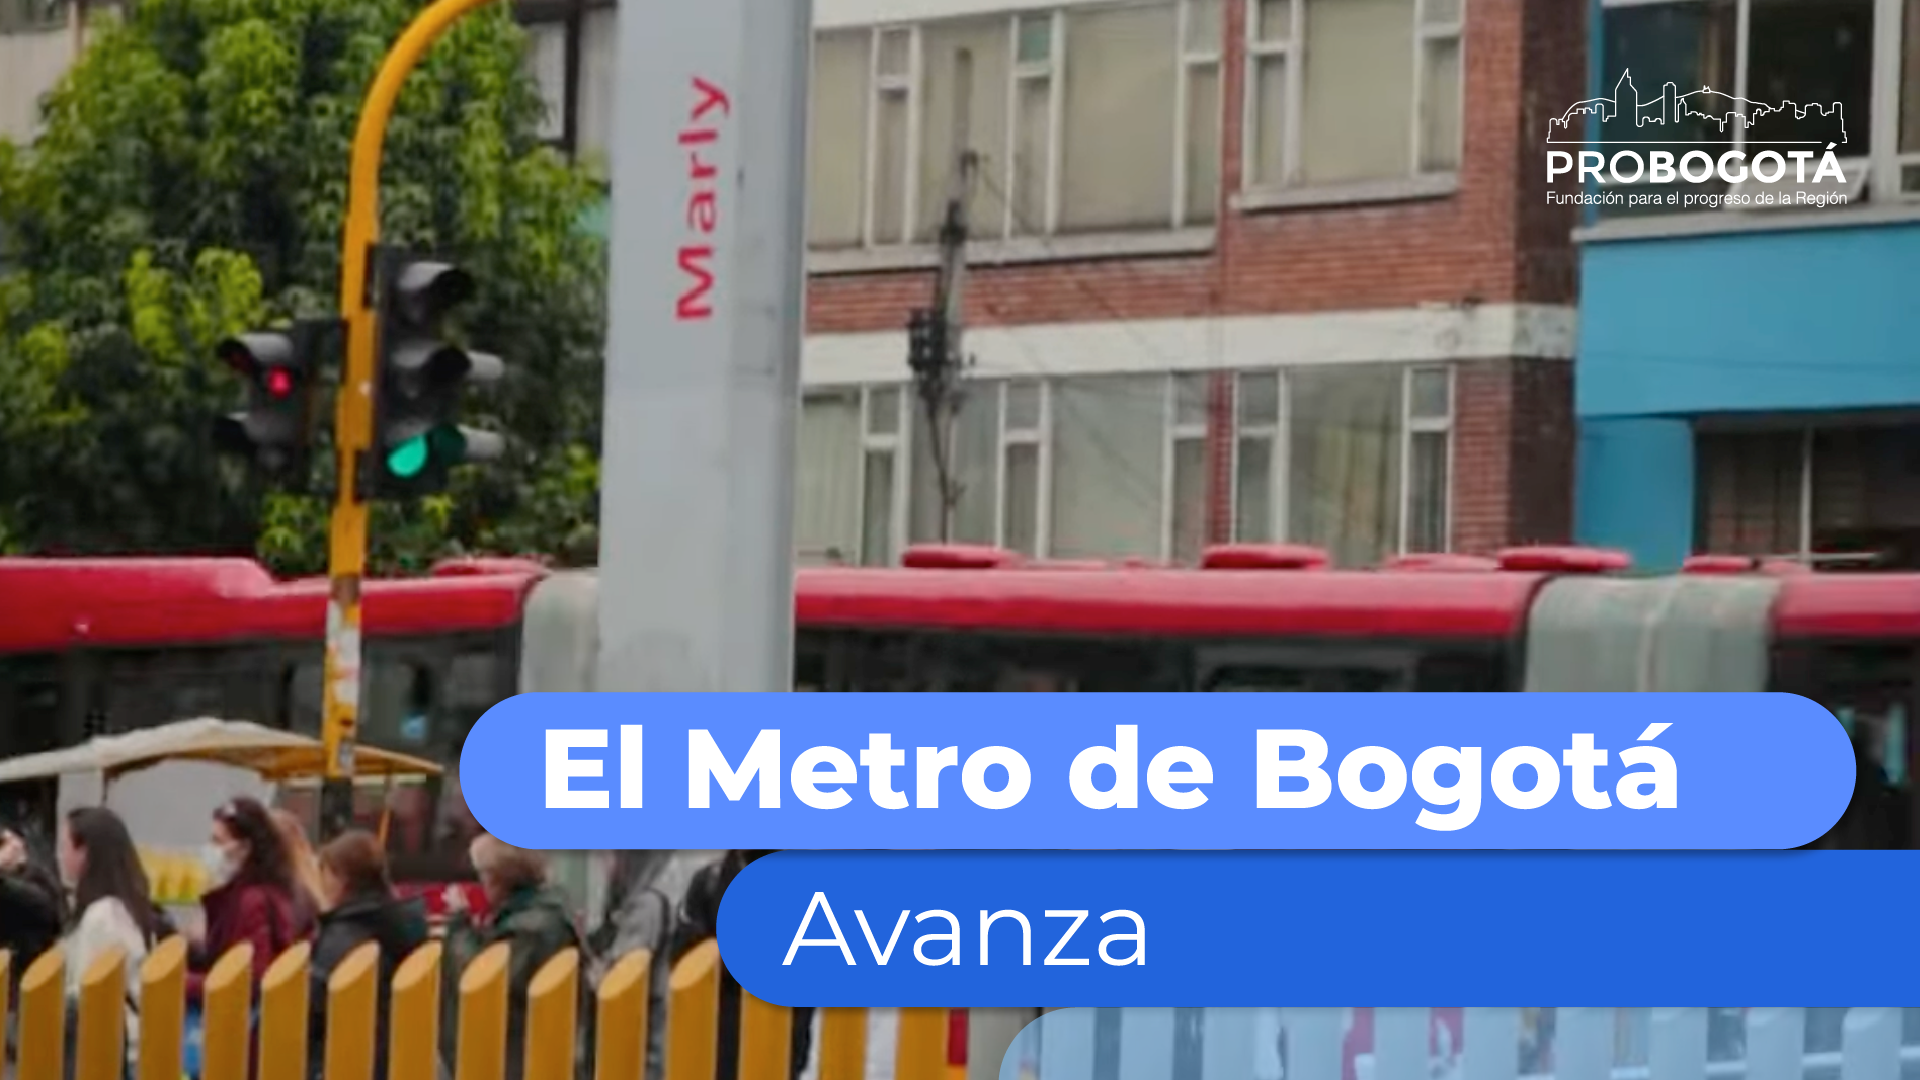 El Metro de Bogotá avanza, conoce los cierres de TransMilenio (Calle 26 y Marly)